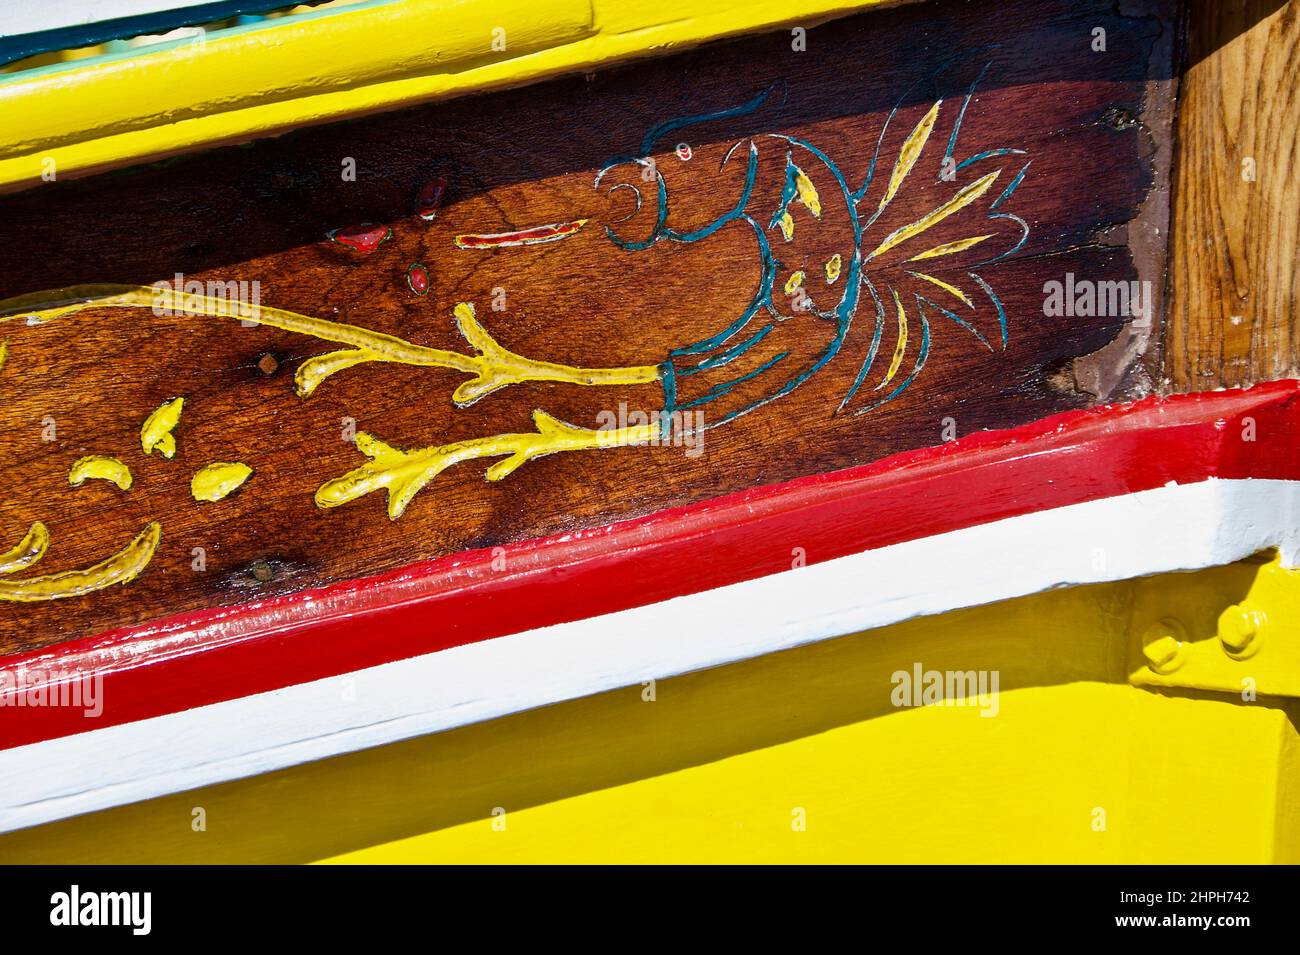 Detalle de decoración de madera en el colorido barco de pesca maltés. Foto de stock